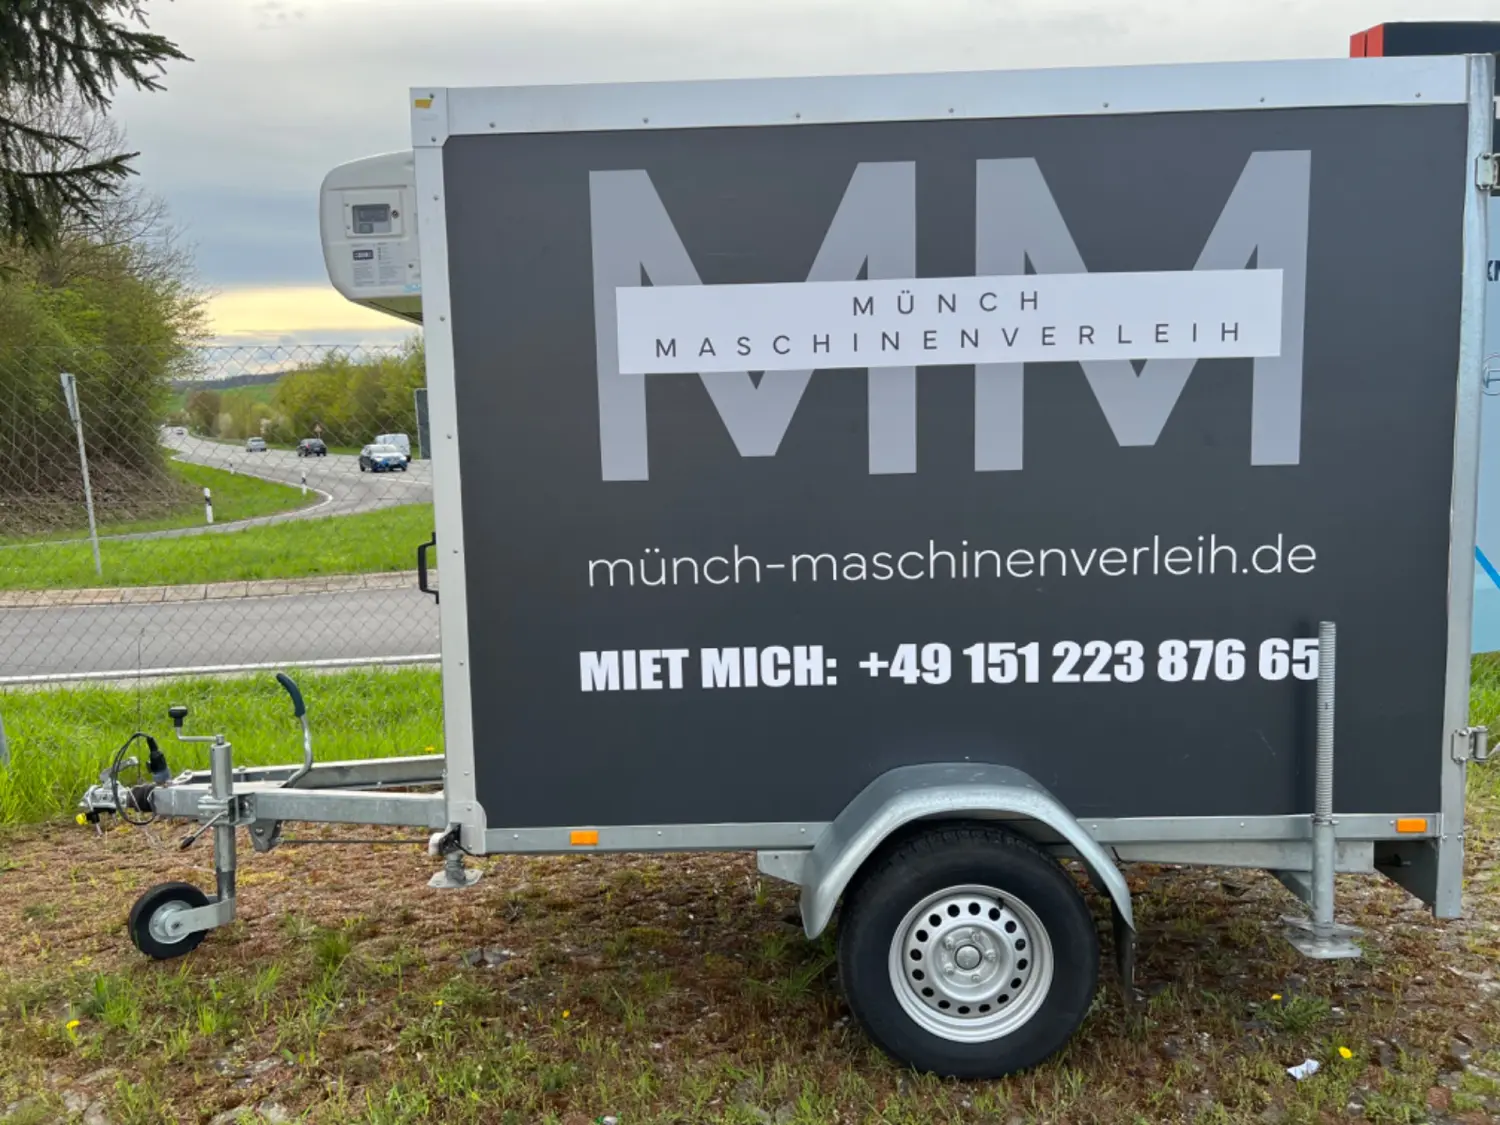 Münch- Maschienenverleih - Münch 